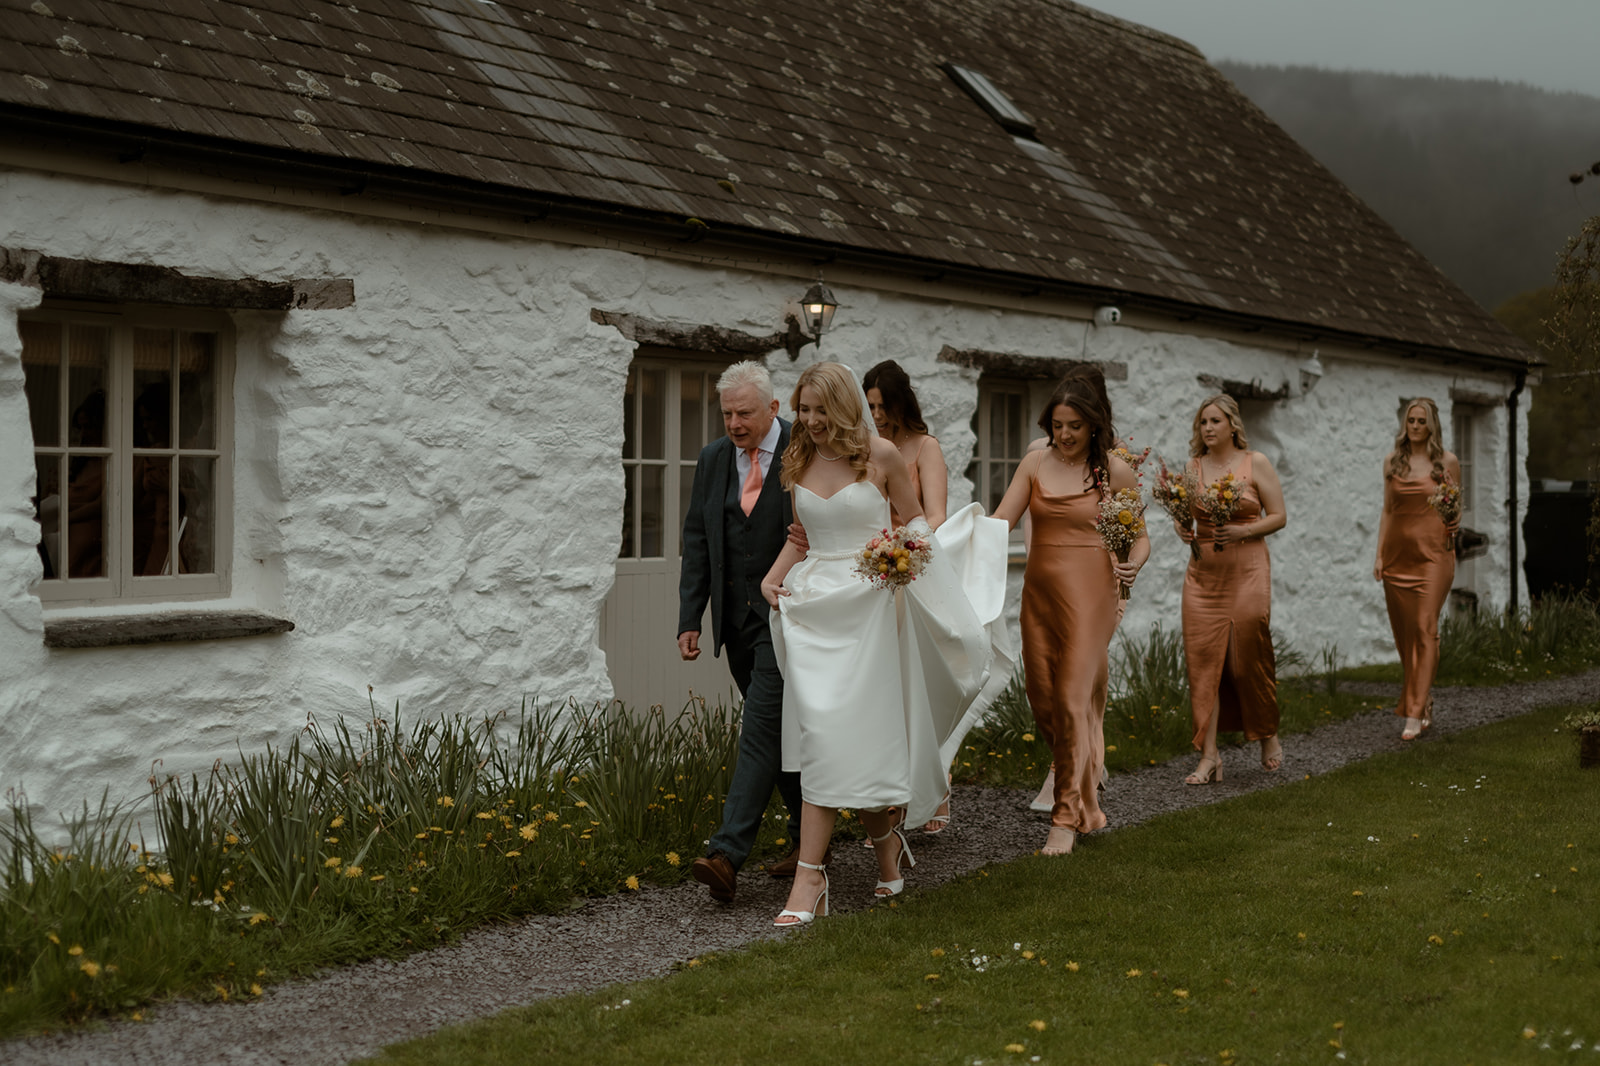 Modern wedding photography at Hafod Farm, a picturesque barn wedding venue in Eryri (Snowdonia).